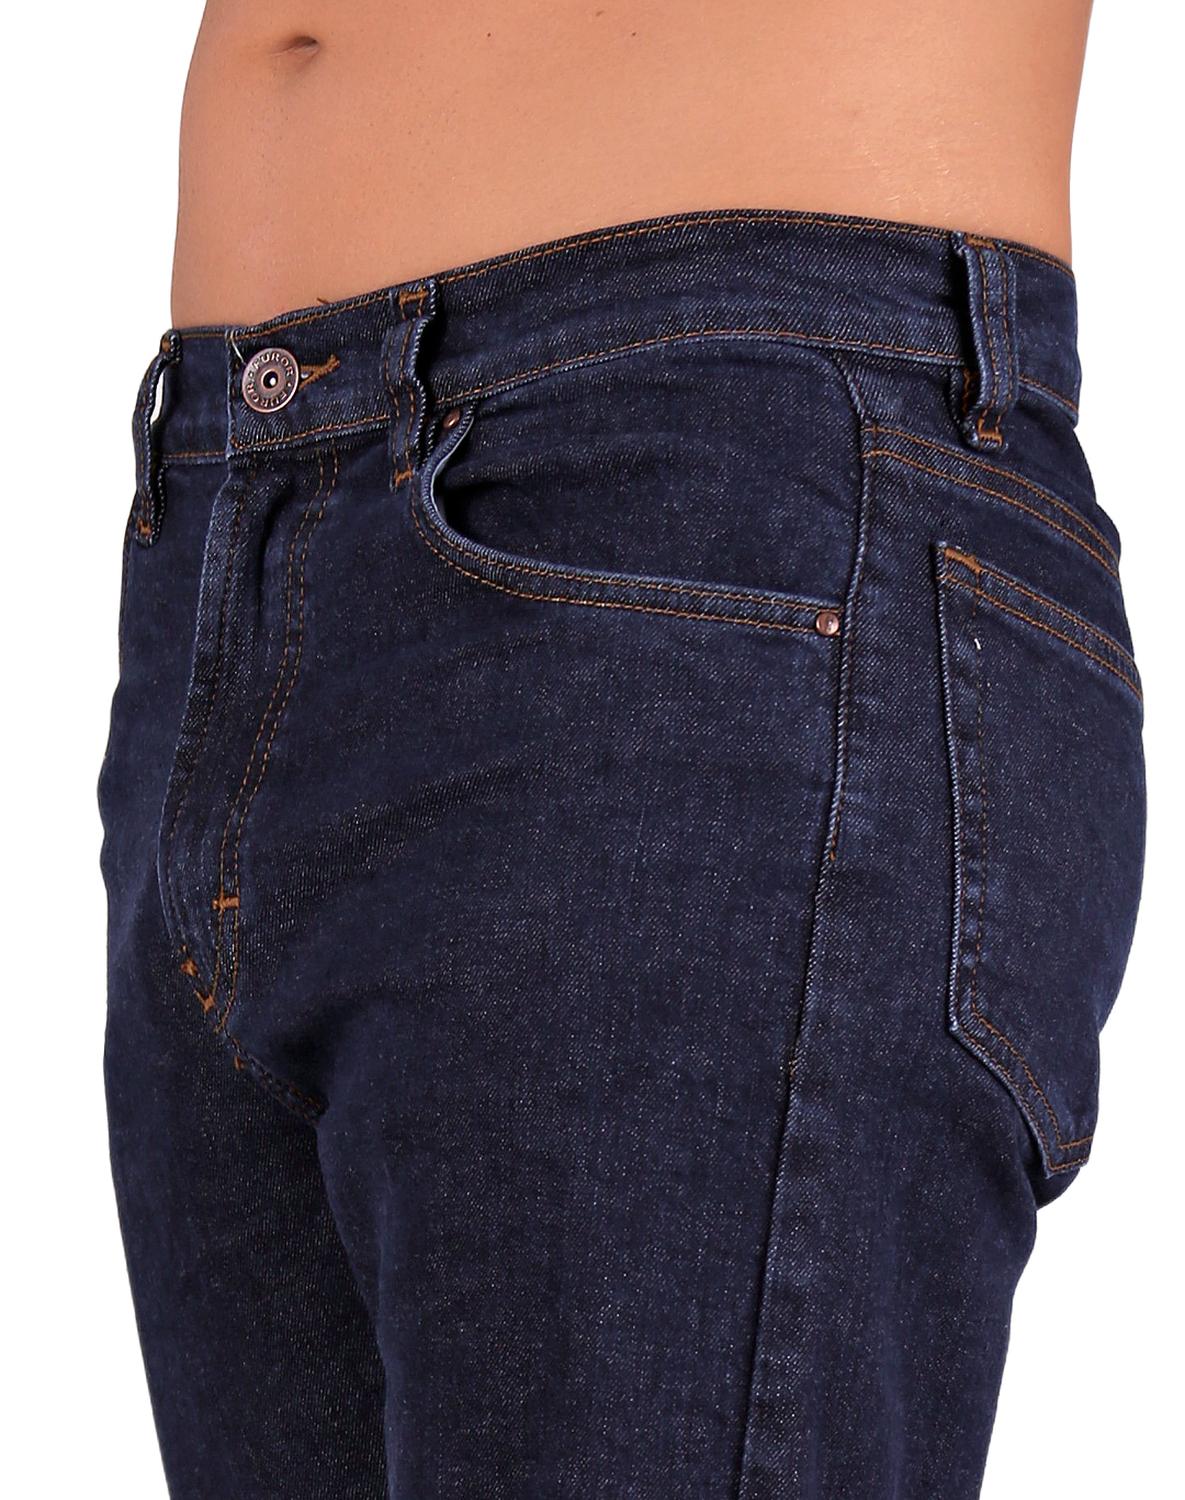 Jeans Básico Hombre Furor Azul 62106018 Marshall Mezclilla-Comfort